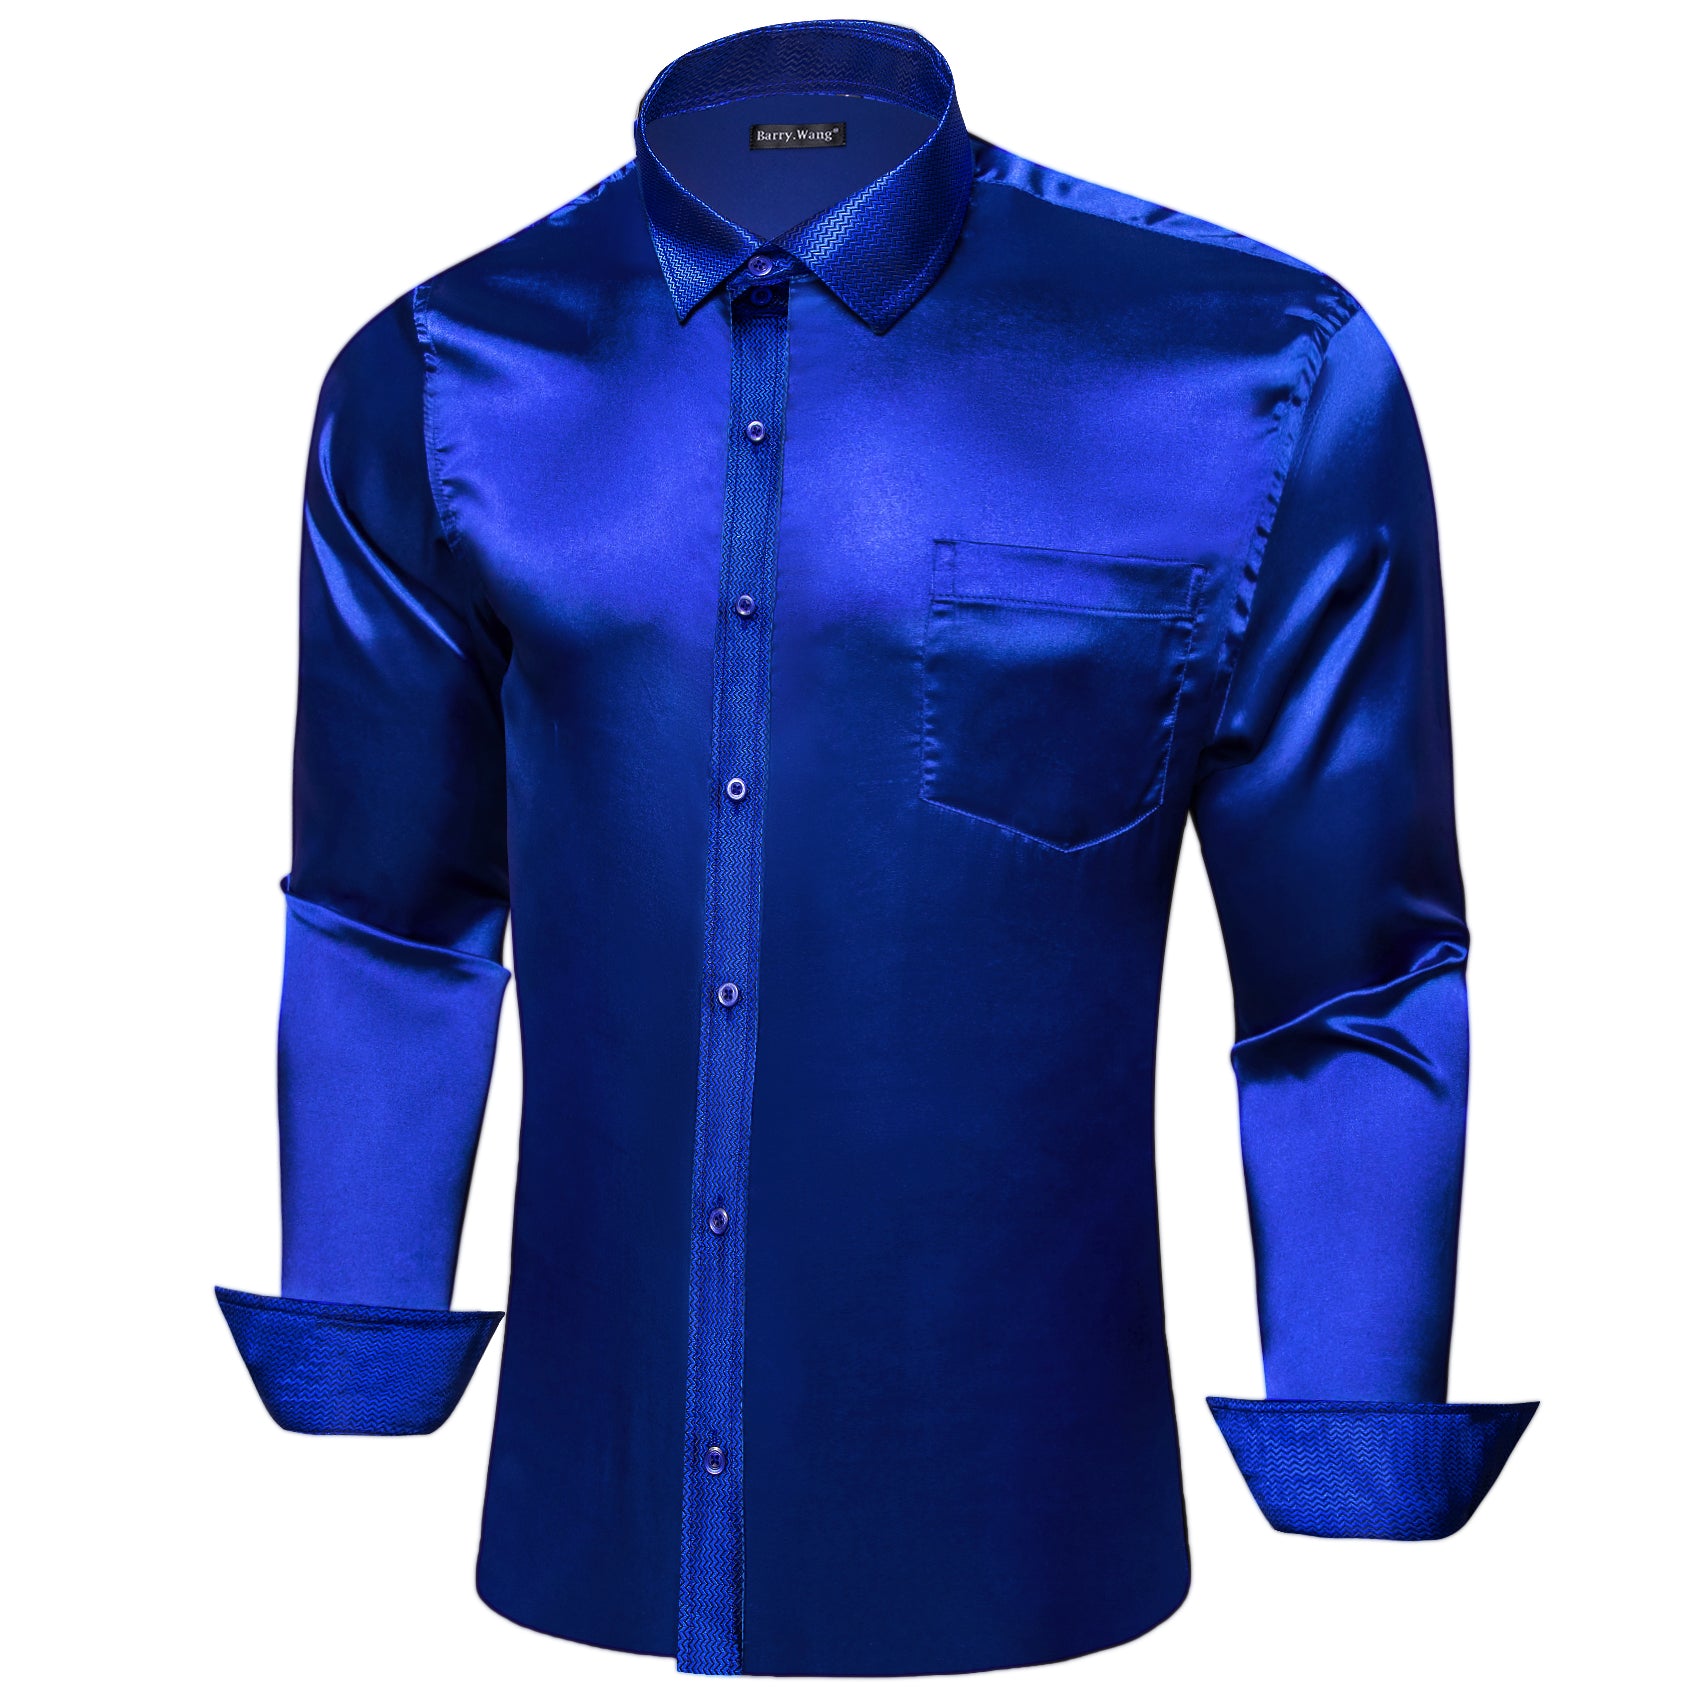 Barry.wang Button Down Shirt Cobalt Blue Solid Men's Long Sleeve Shirt